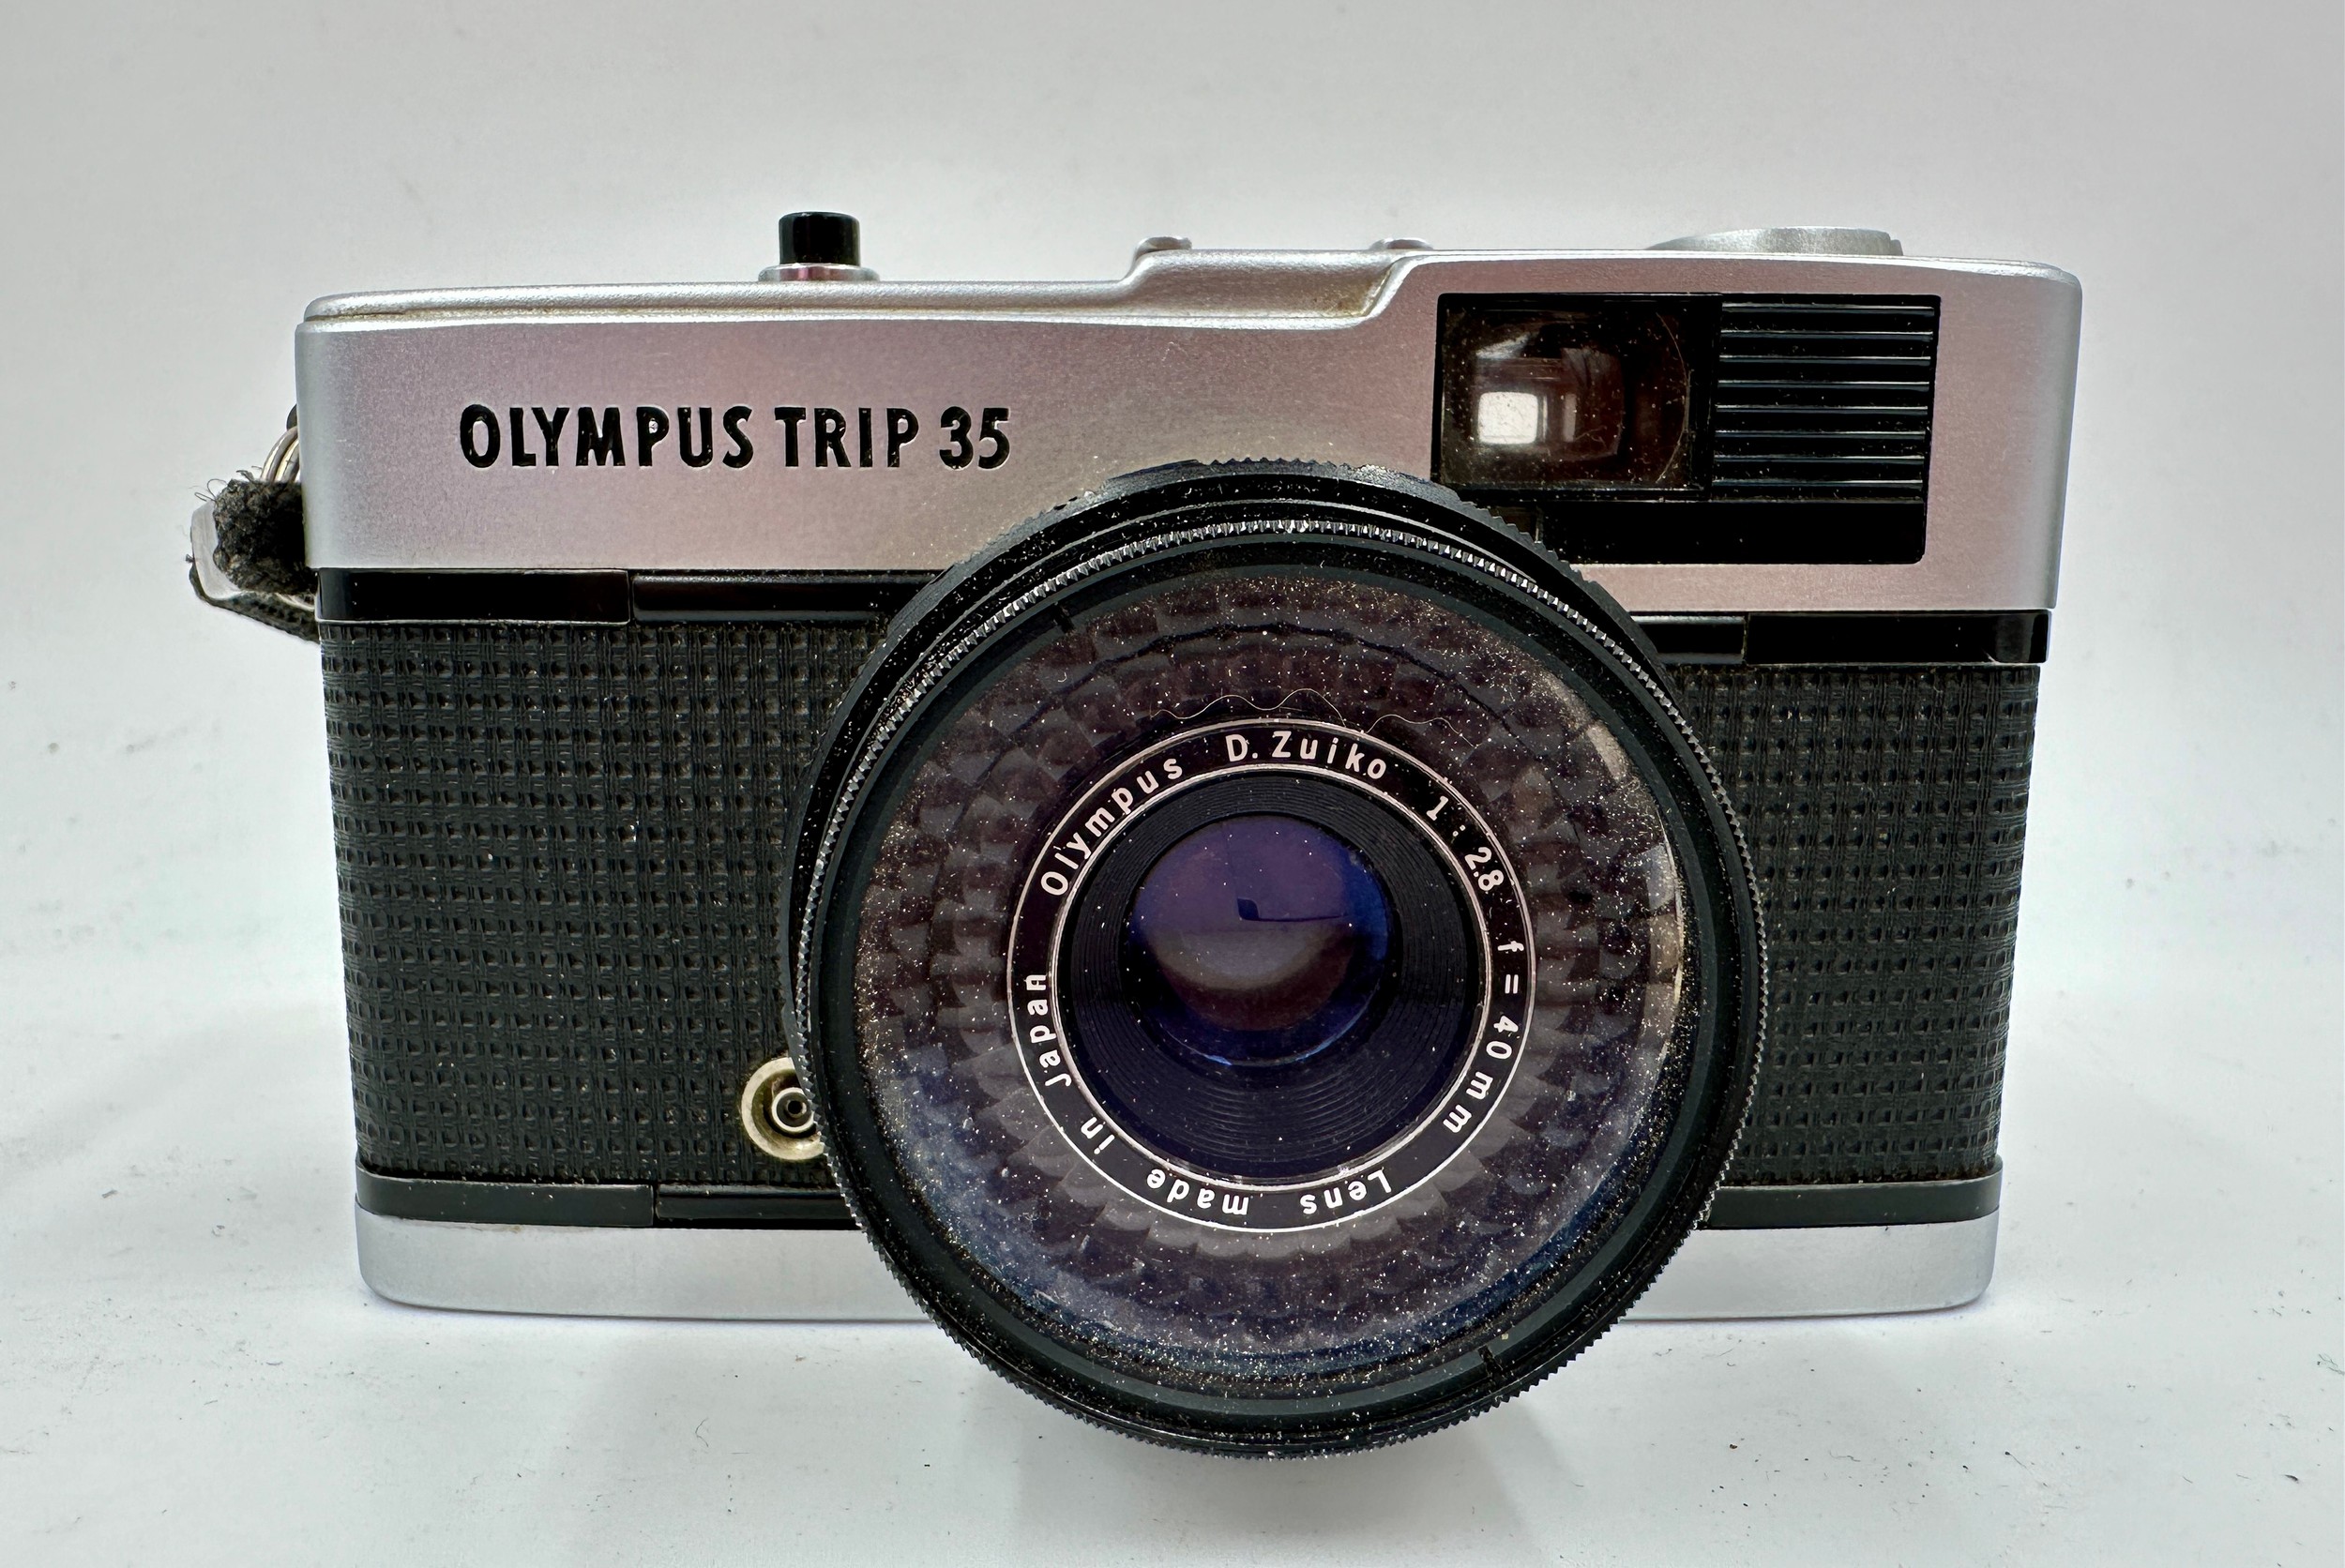 An Olympus Trip 35mm camera.